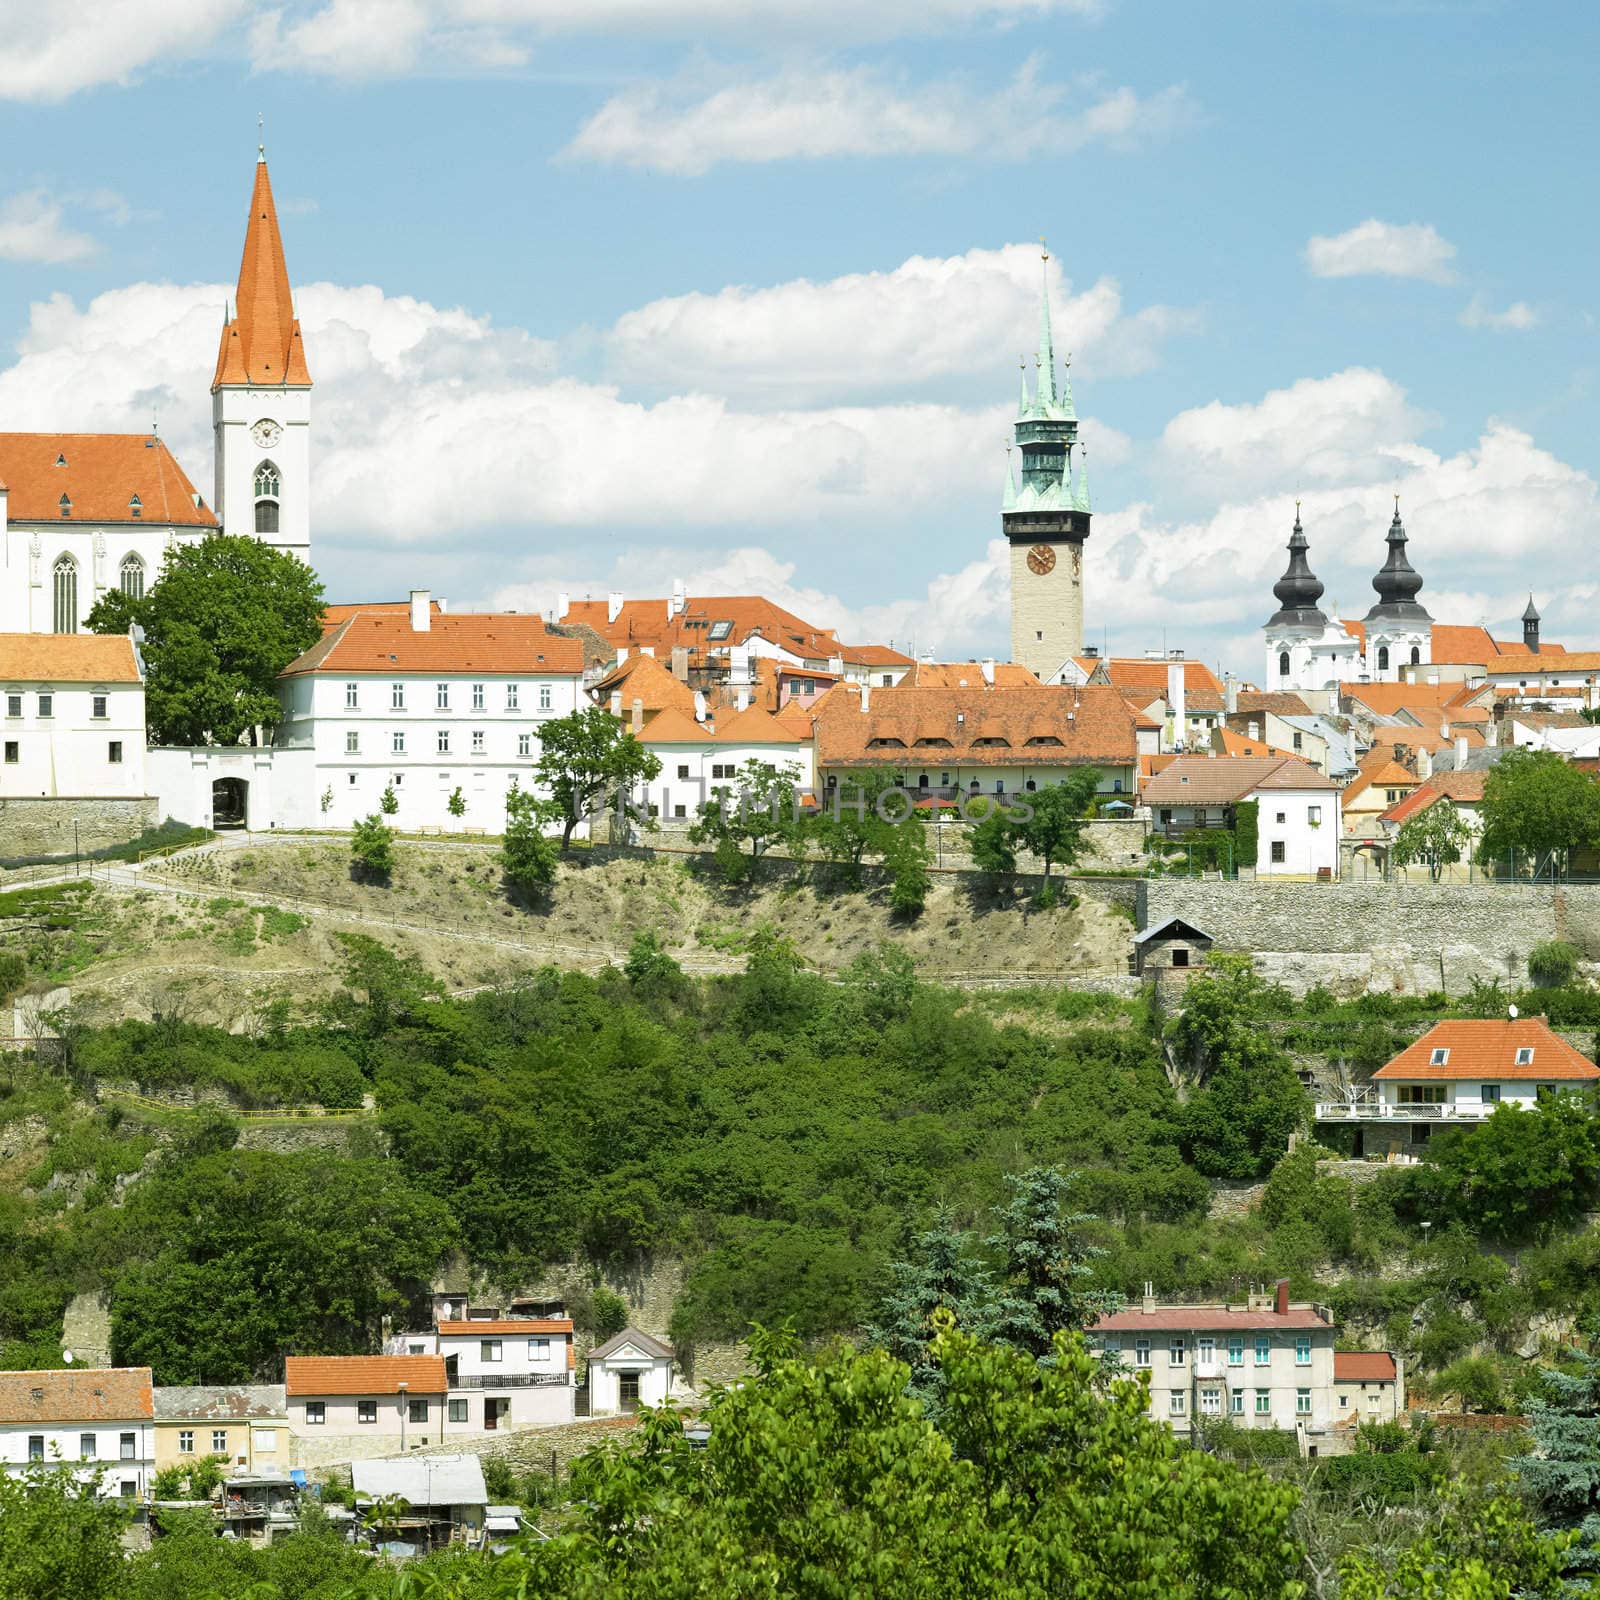 Znojmo, Czech Republic by phbcz